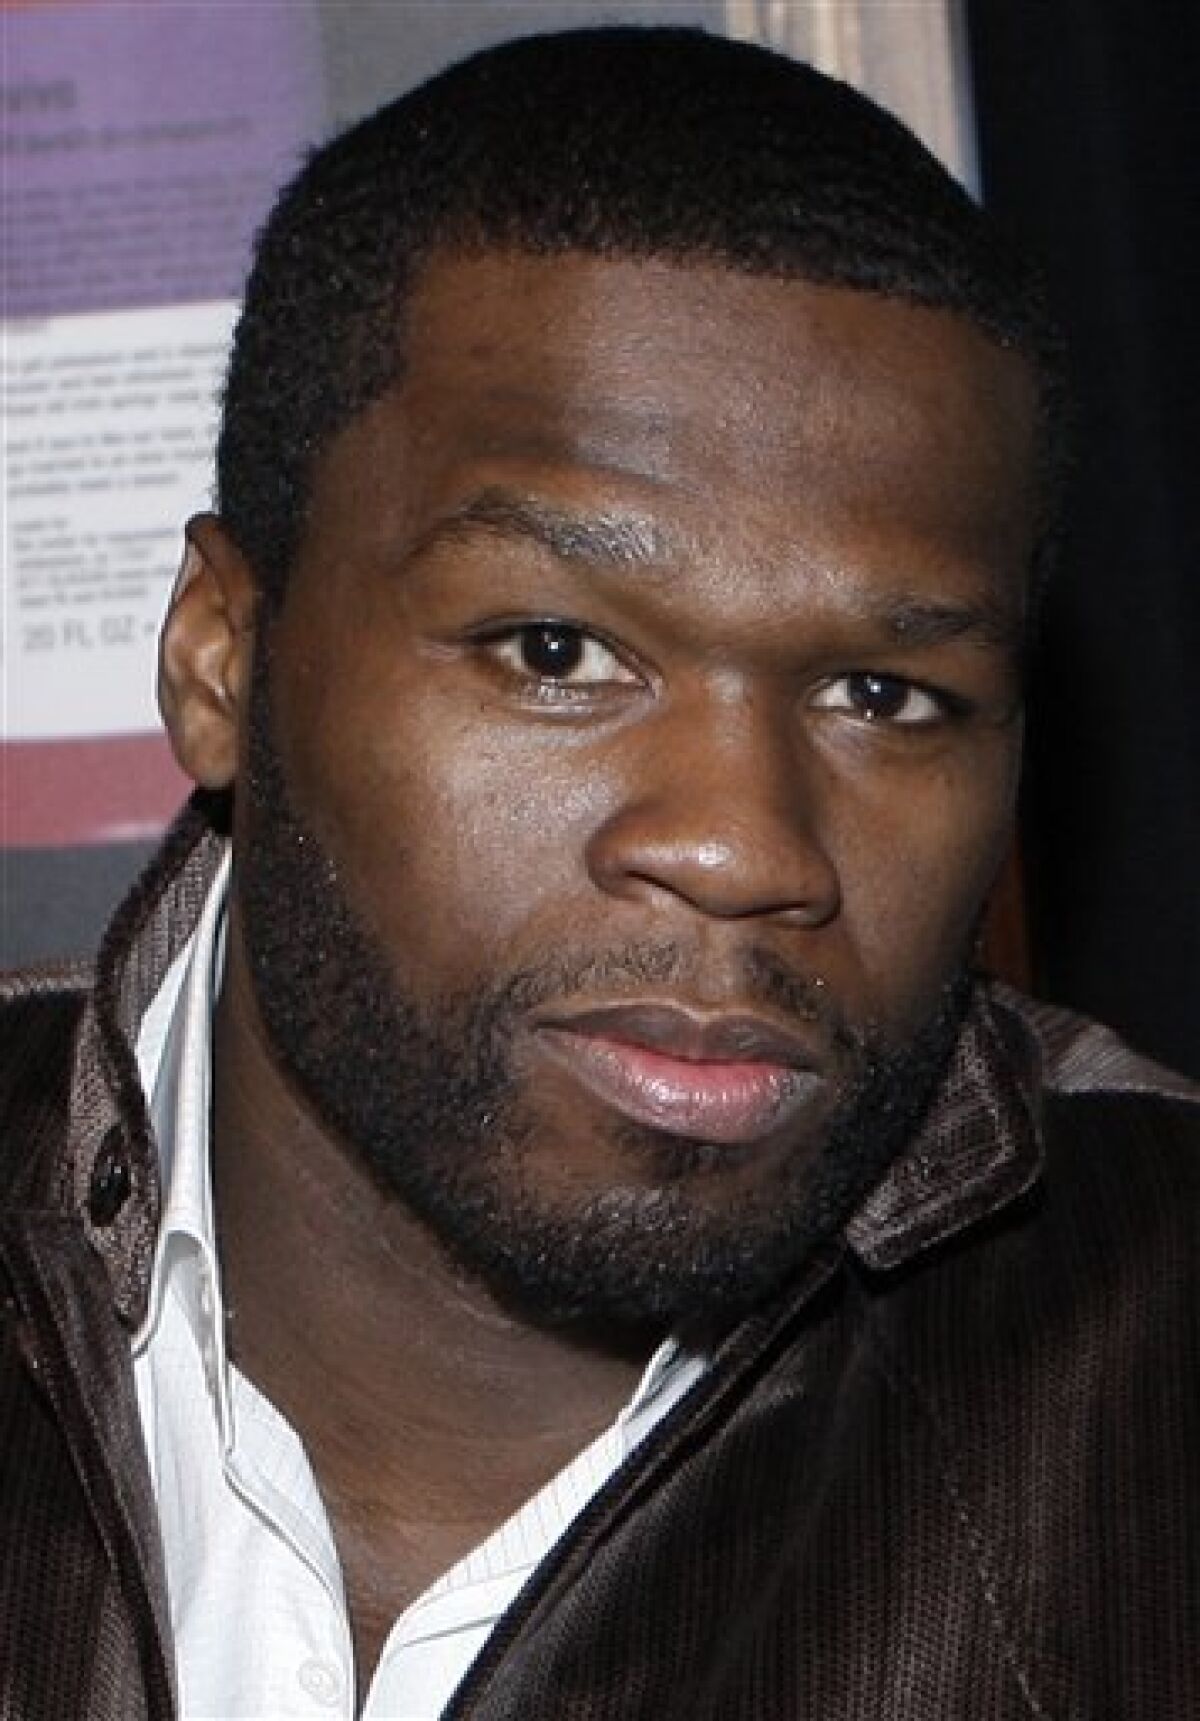 NYC judge tosses ex's lawsuit against 50 Cent - The San Diego Union-Tribune